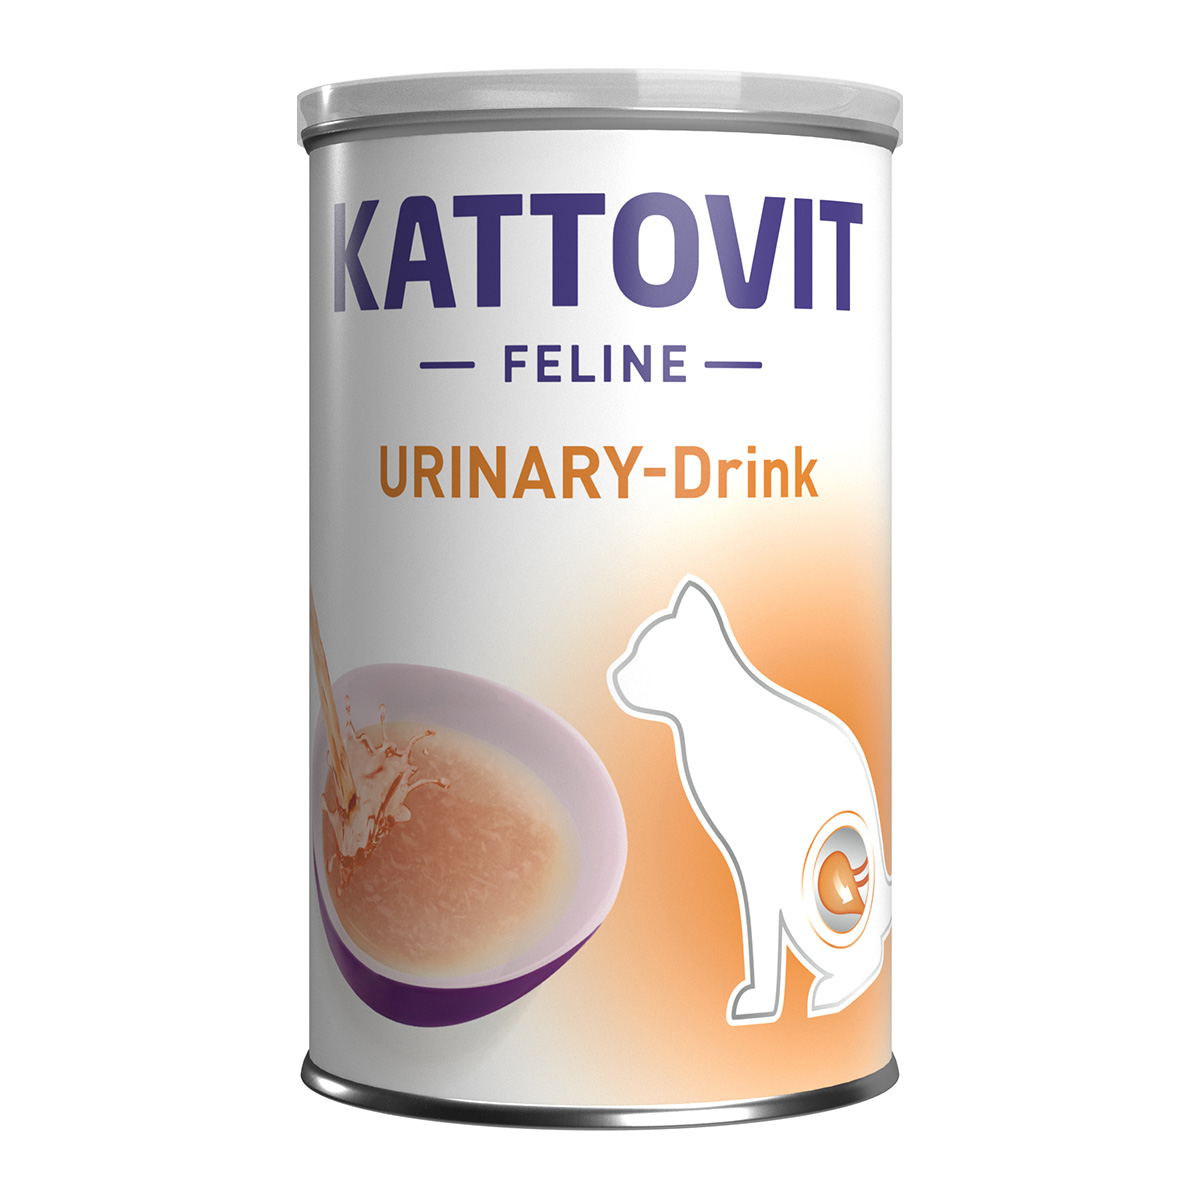 Kattovit Urinary Drink 24 × 135 ml